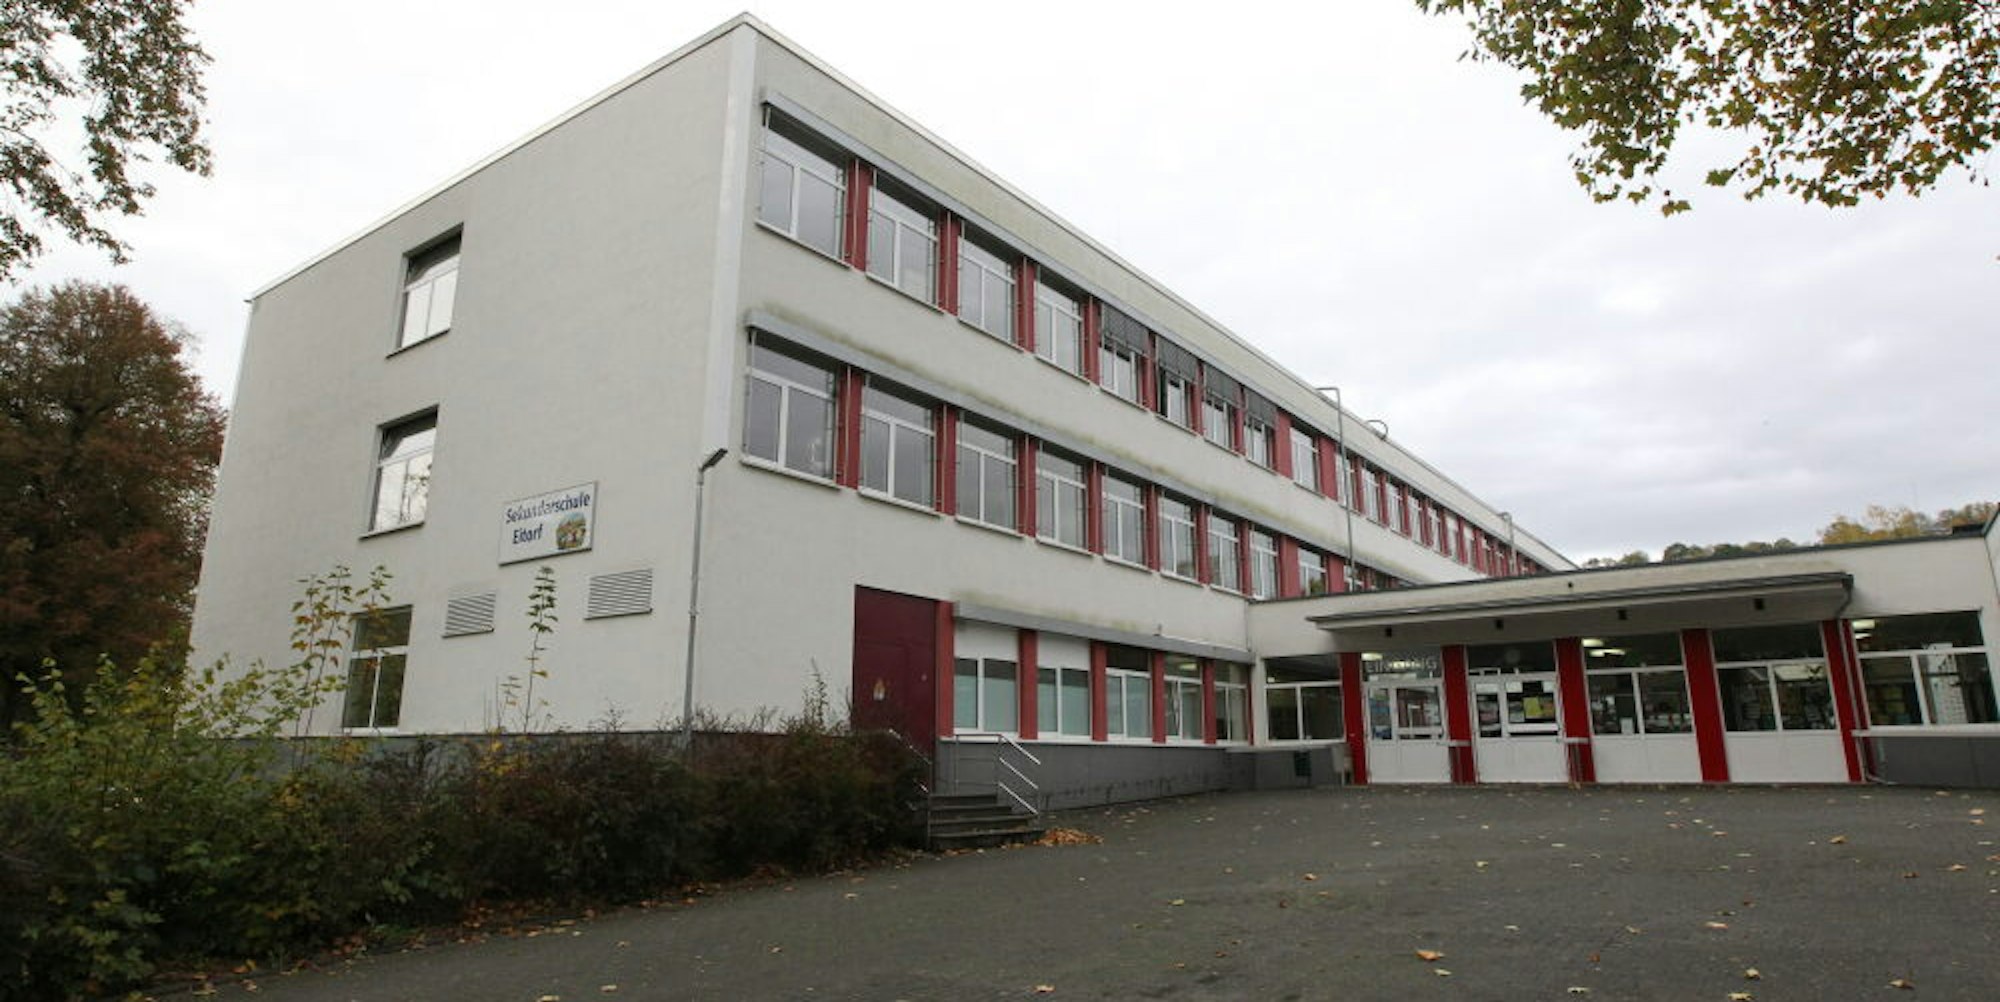 Die Eitorfer Sekundarschule verliert zu viele potenzielle Schüler an die Gesamtschulen in Hennef und Windeck. 